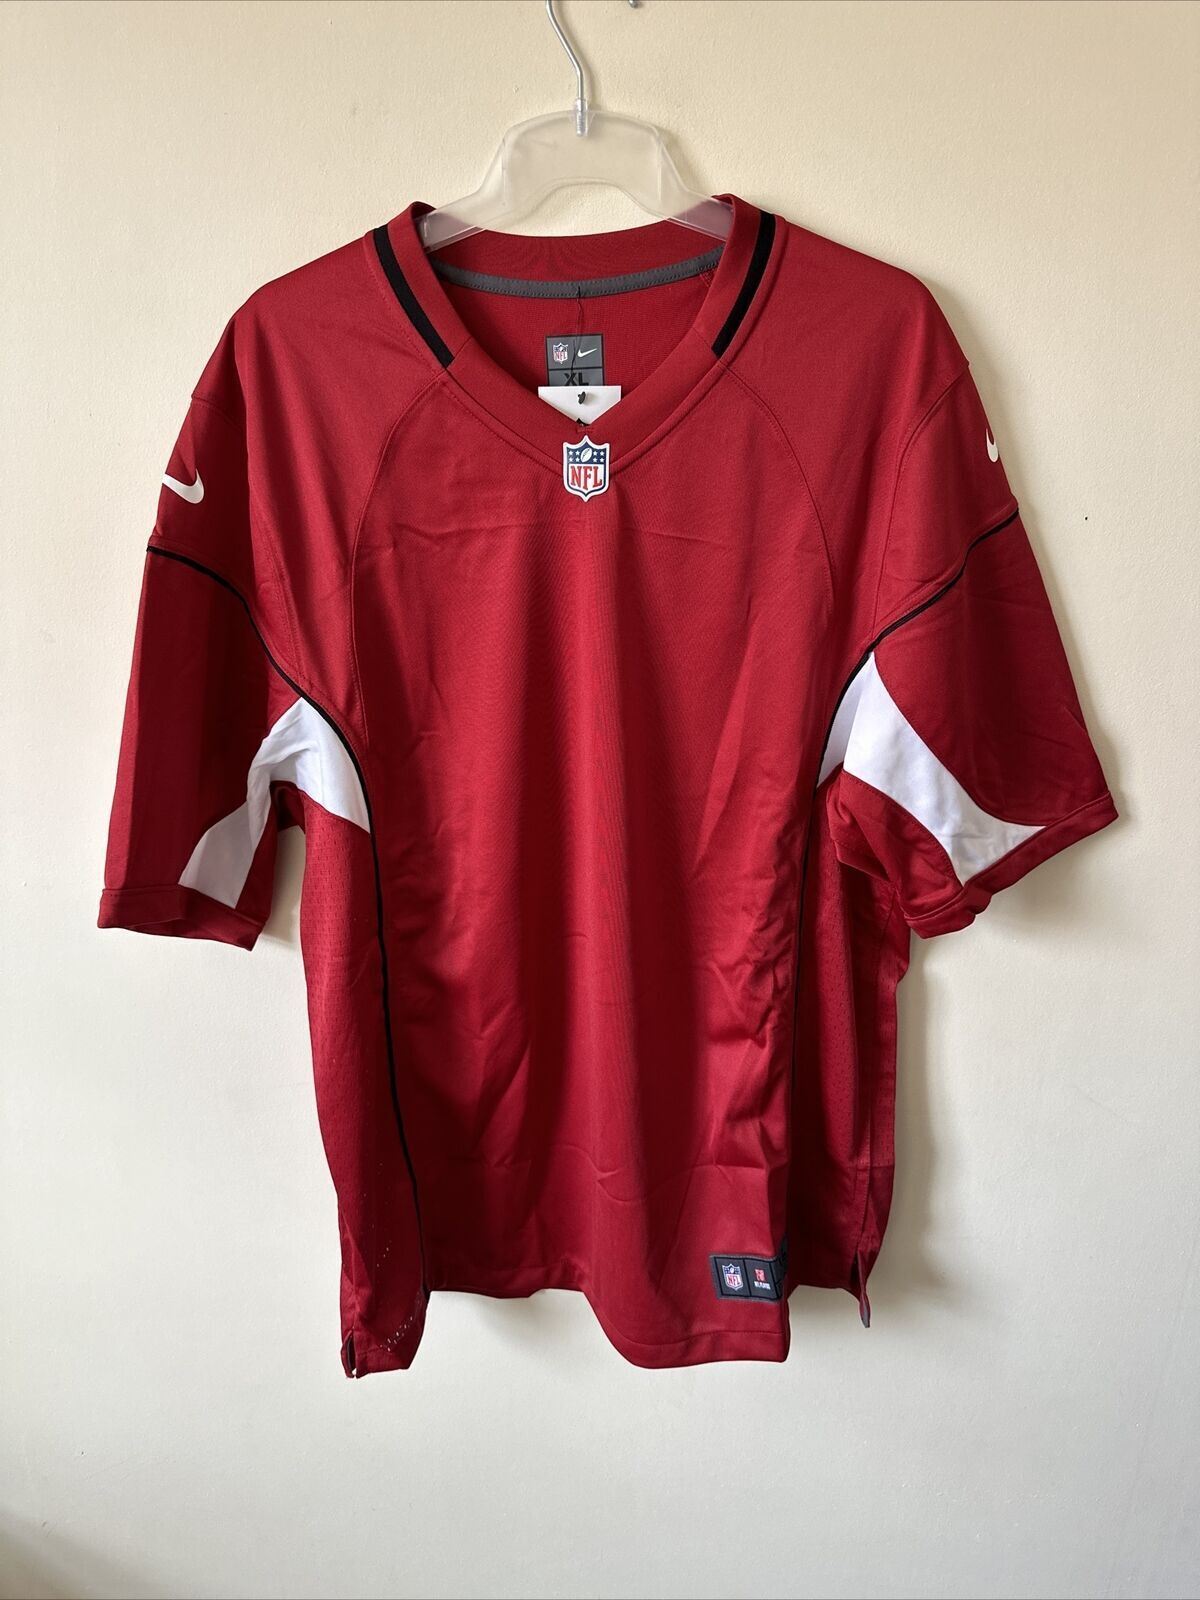 Nike NFL Arizona Cardinals Game Jersey ERTZ 98 Mens XL